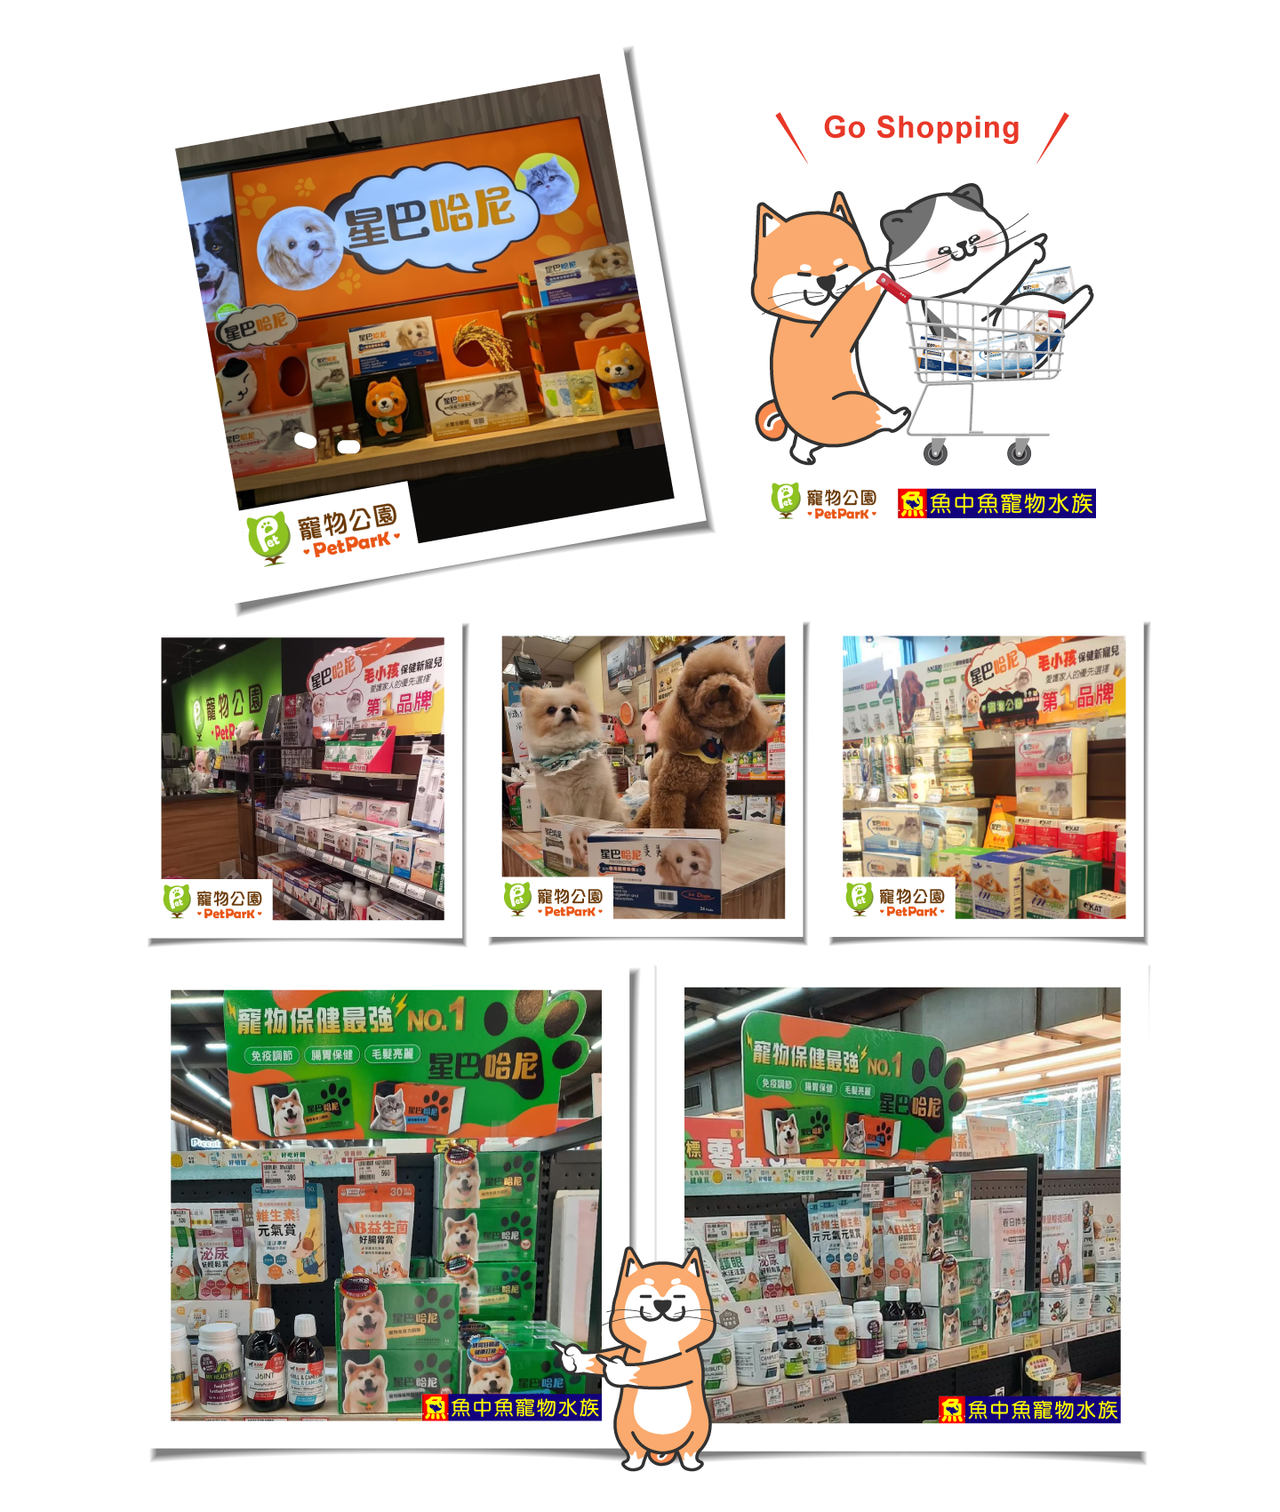 寵物公園 & 魚中魚實體商店可購買星巴哈尼系列全商品